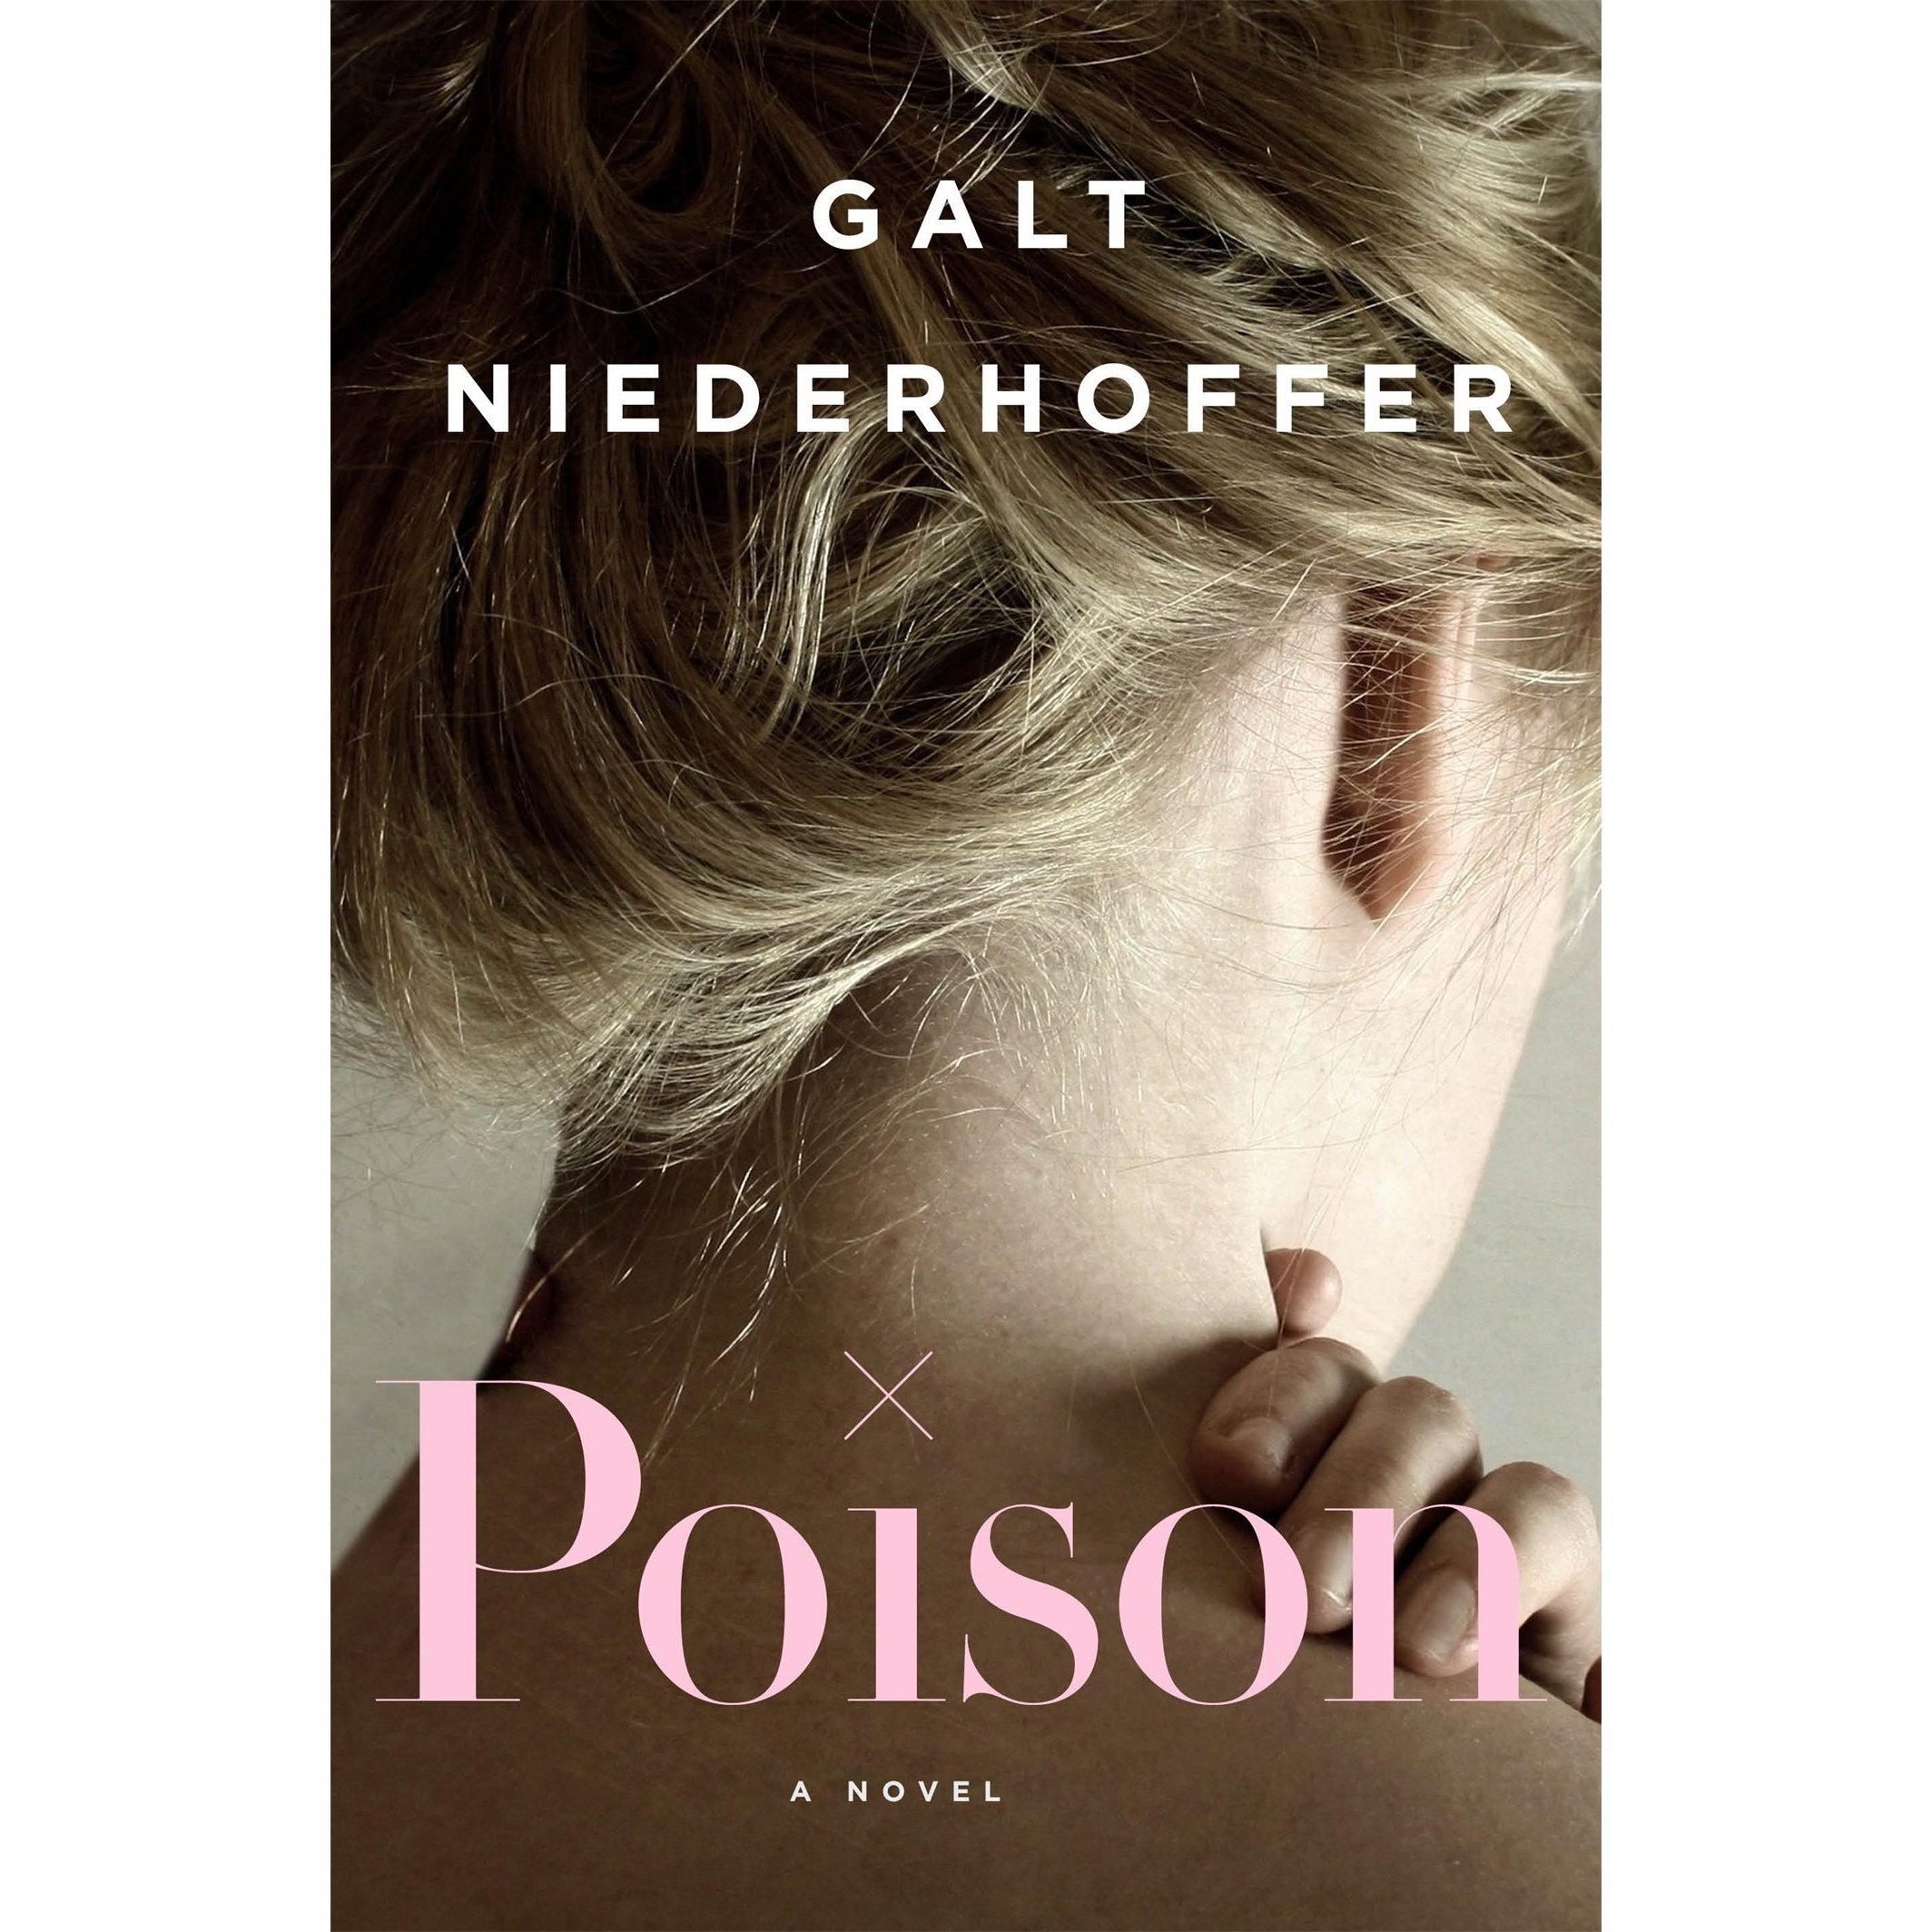 Poison by Galt Niederhoffer, $18 @amazon.com